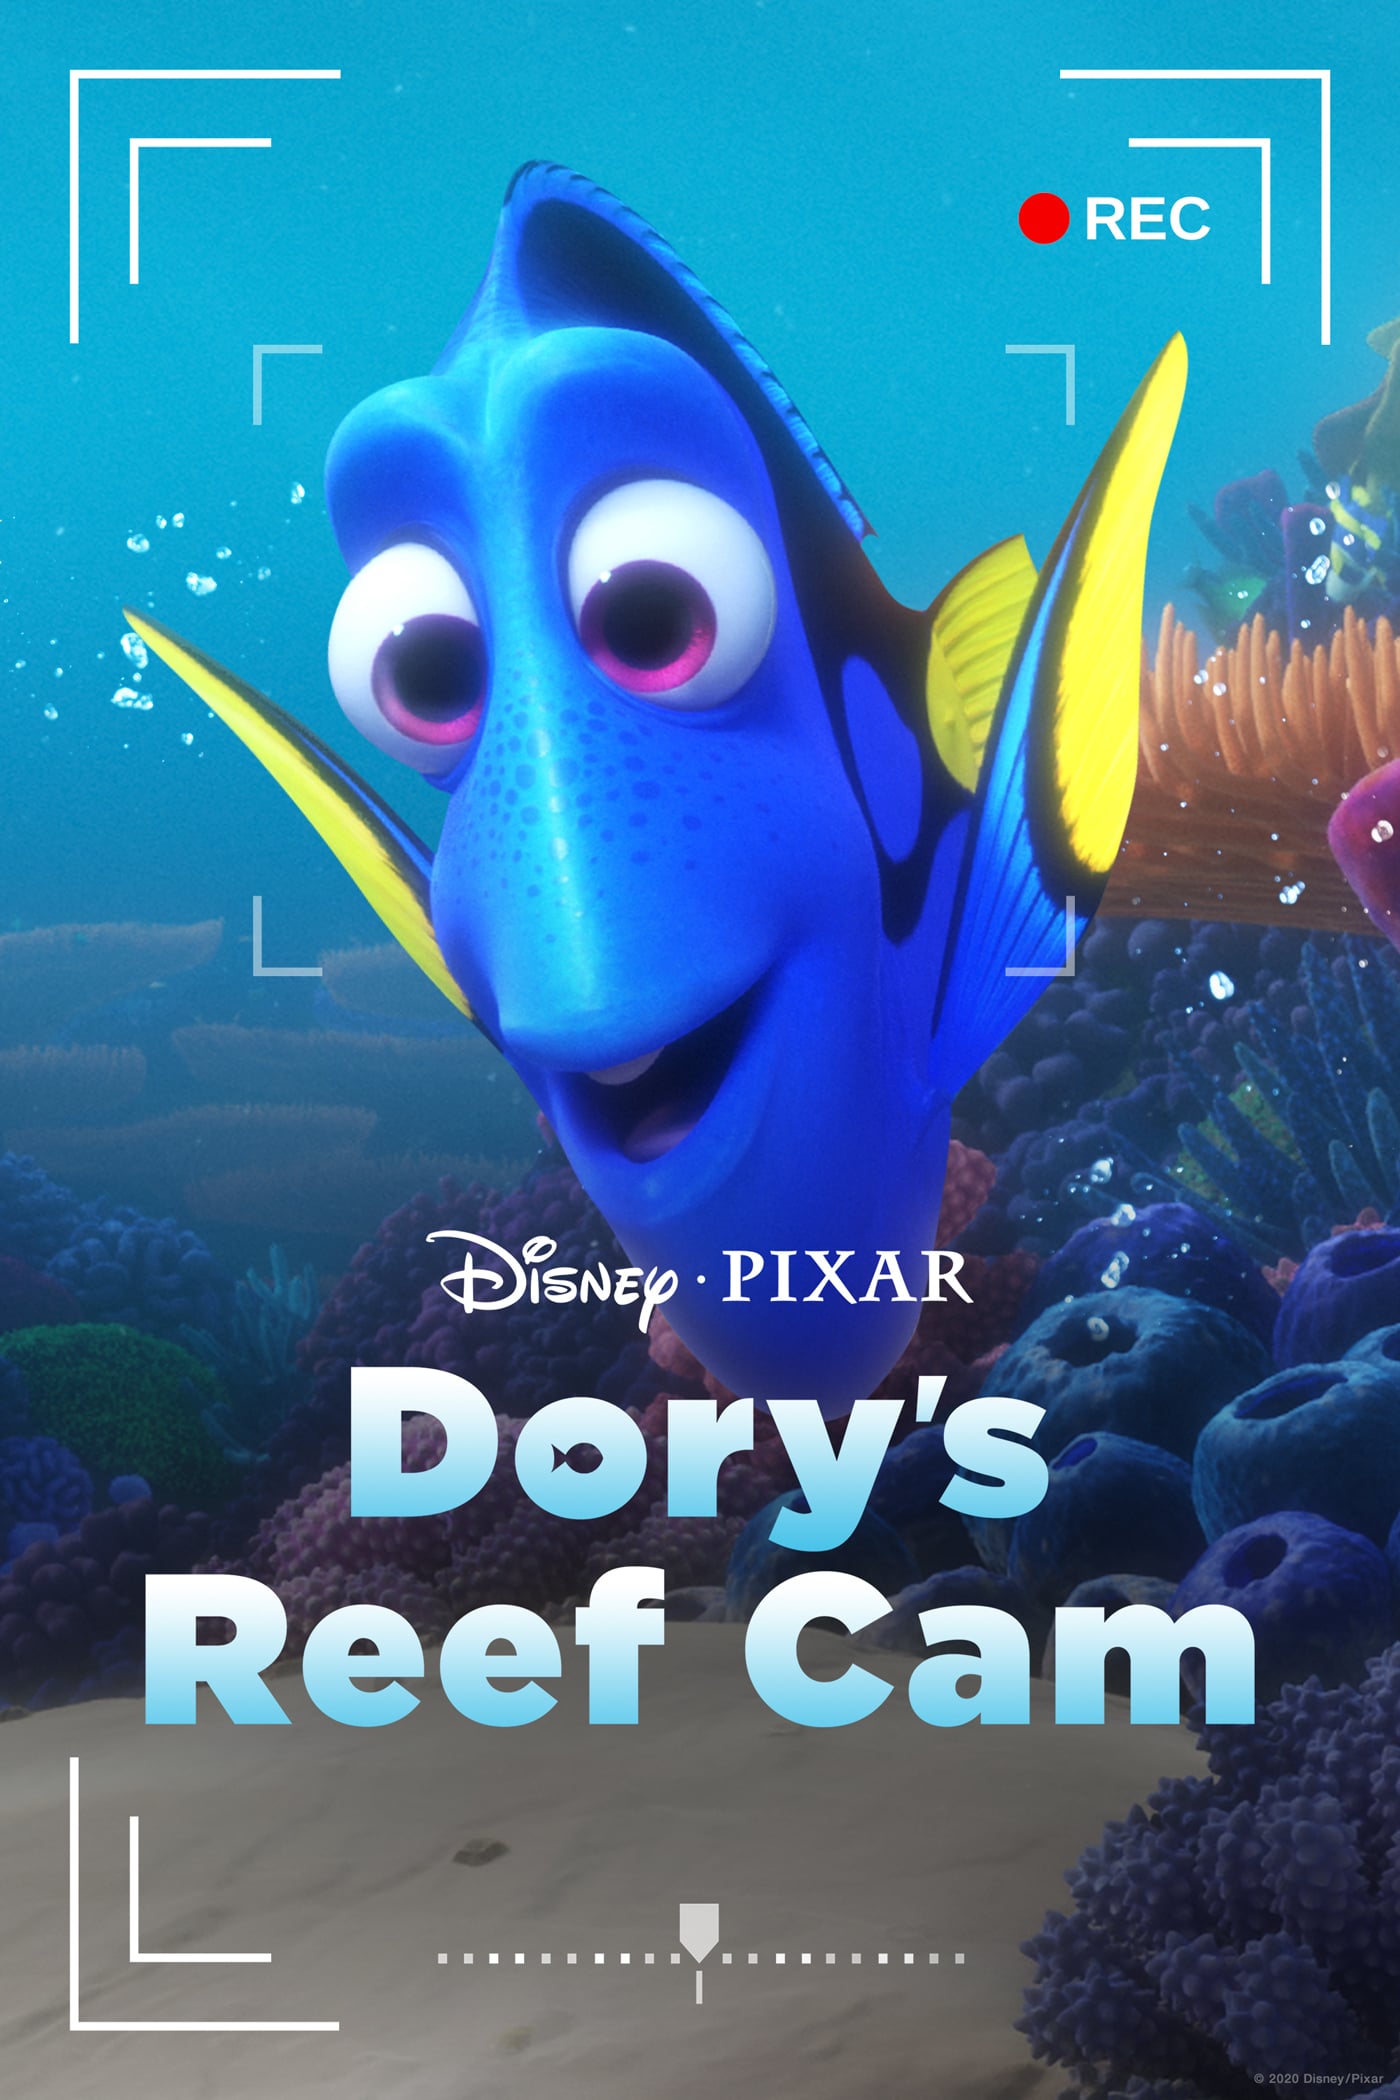 دانلود فیلم Dory's Reef Cam 2020